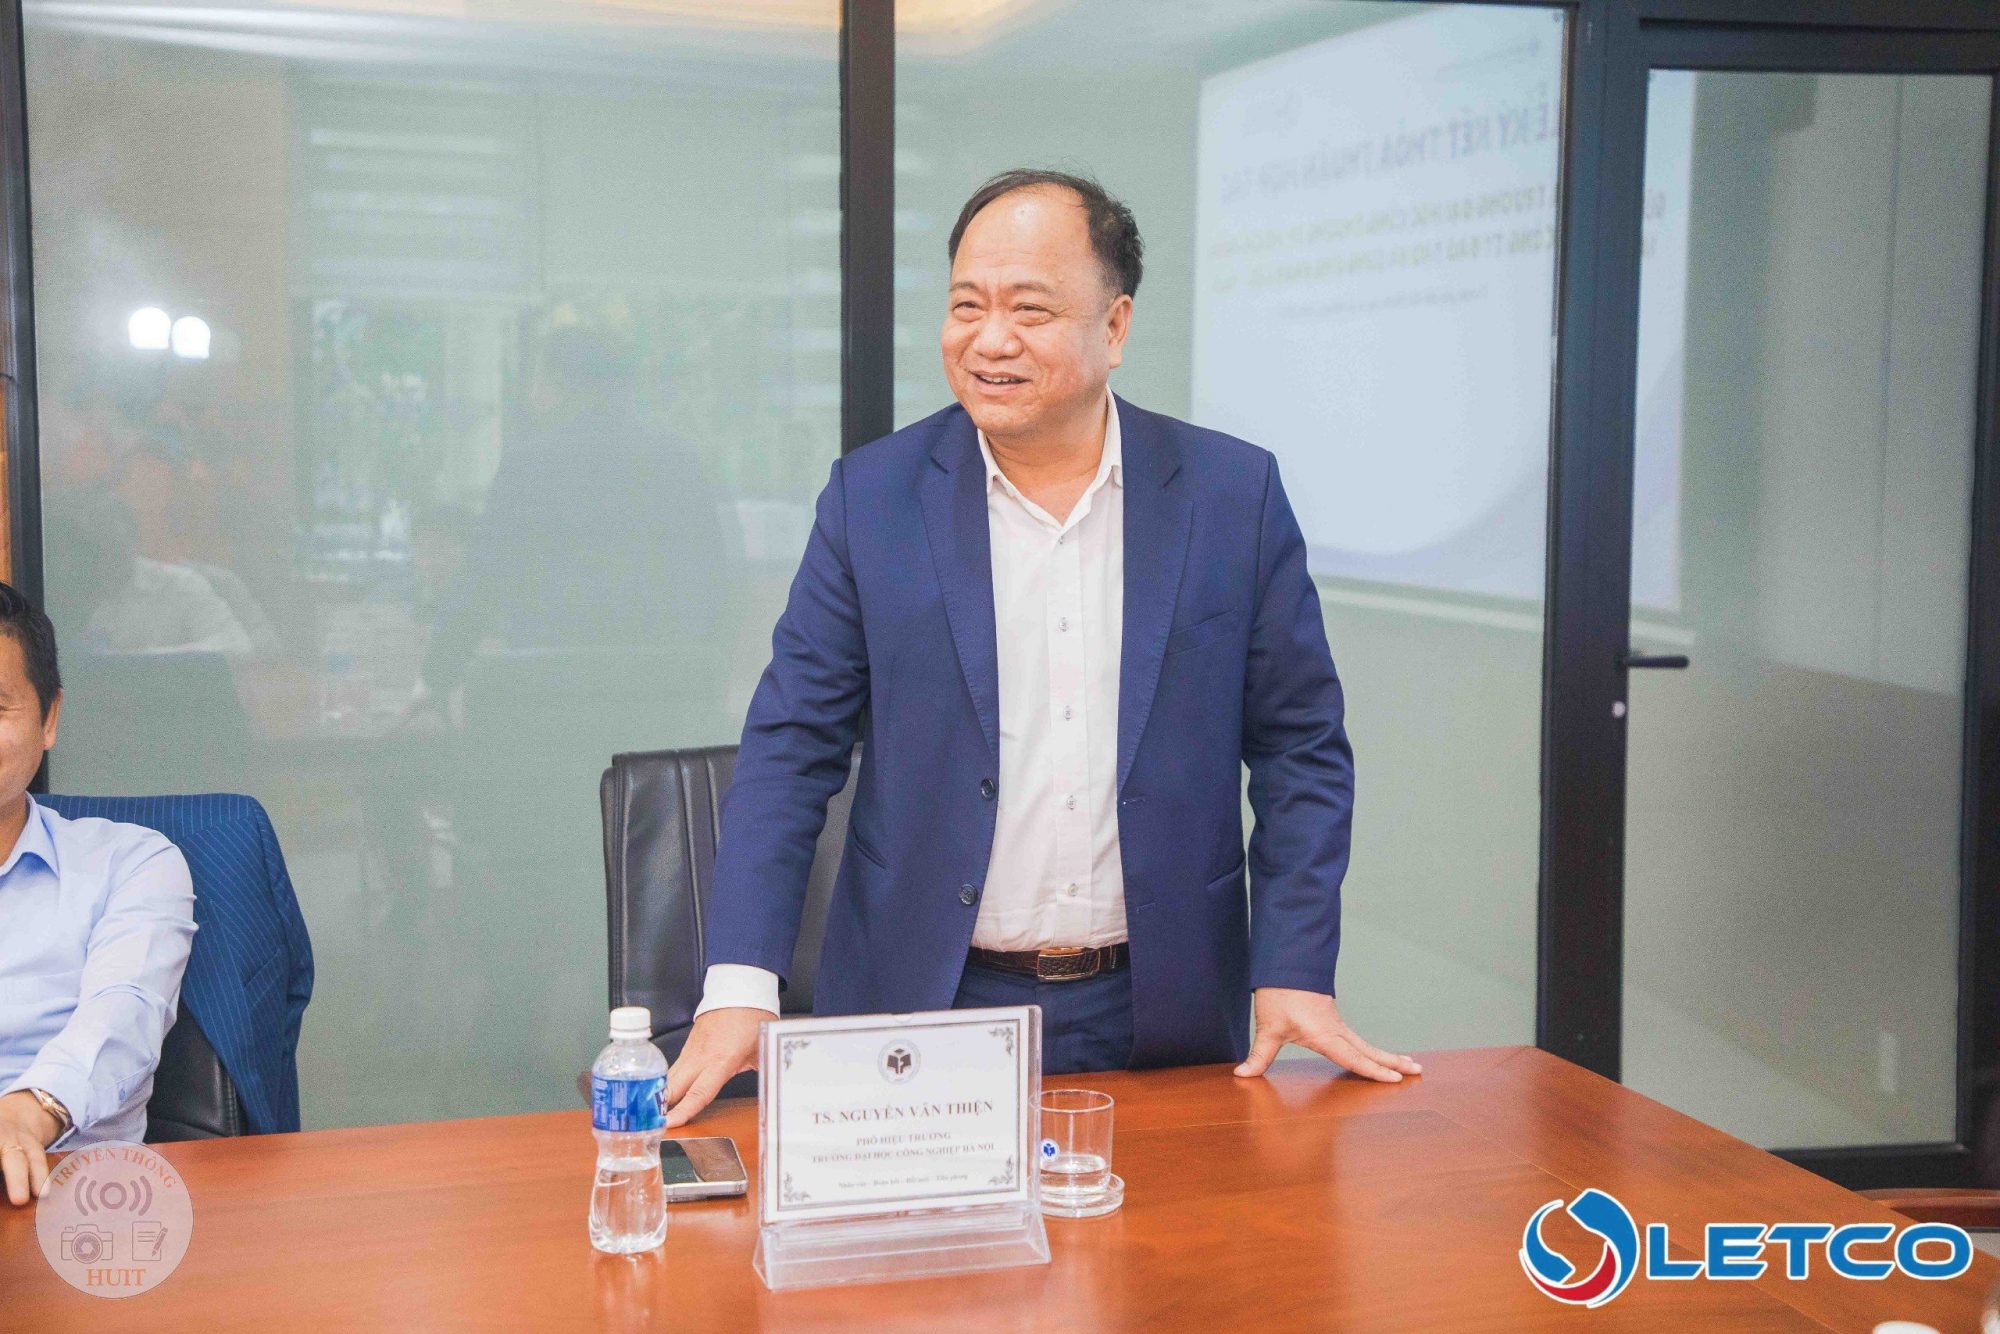 TS. Nguyễn Văn Thiện, Phó Hiệu trưởng Đại học Công nghiệp Hà Nội, Chủ tịch Hội đồng thành viên Công ty LETCO phát biểu tại buổi làm việc.